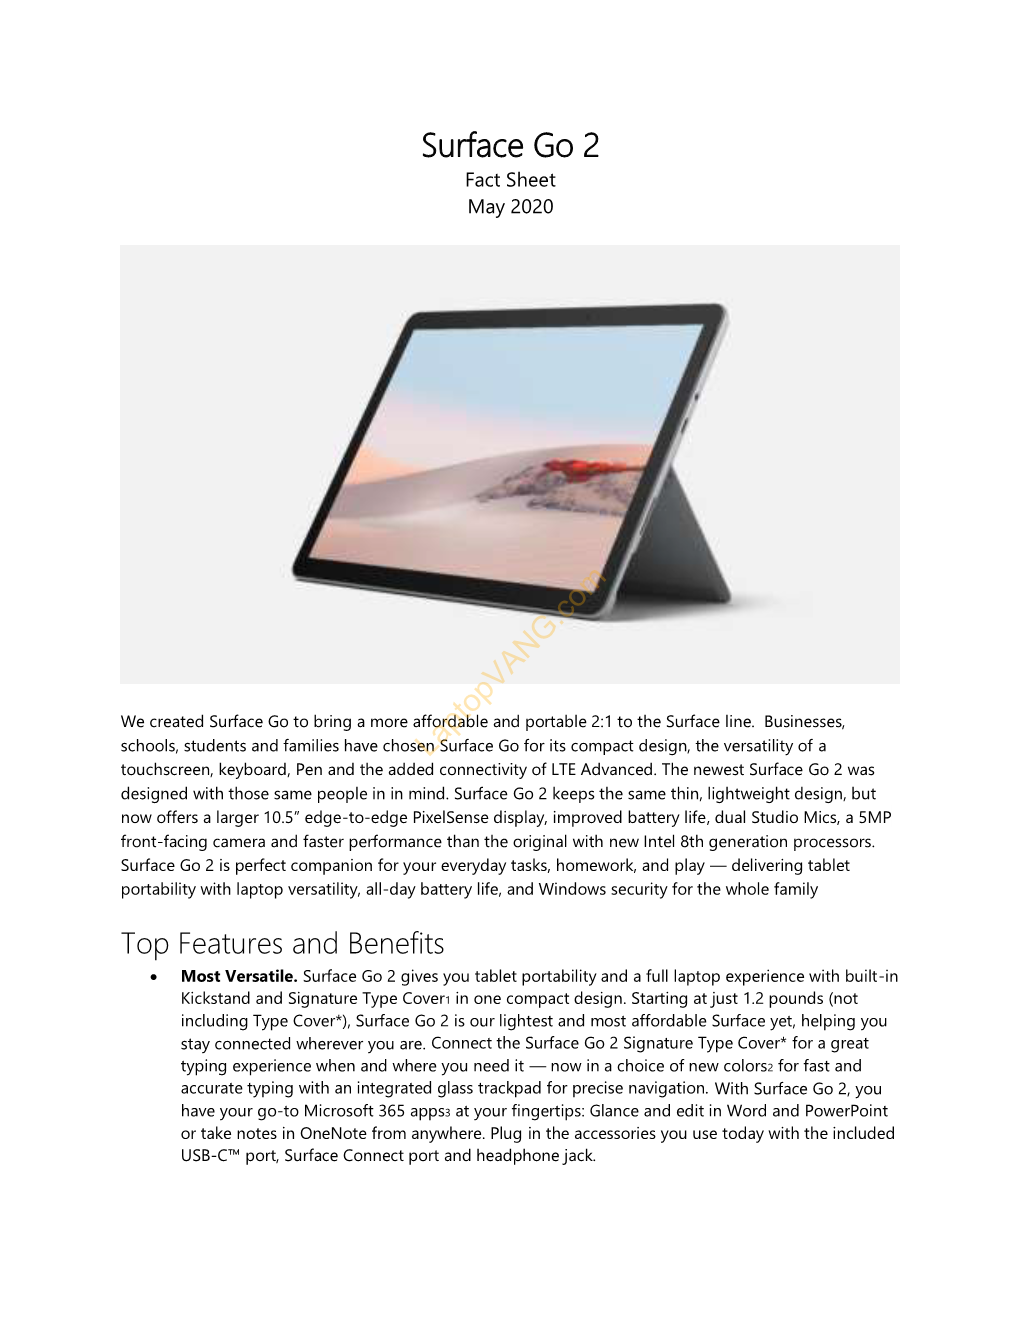 Surface Go 2 Fact Sheet May 2020